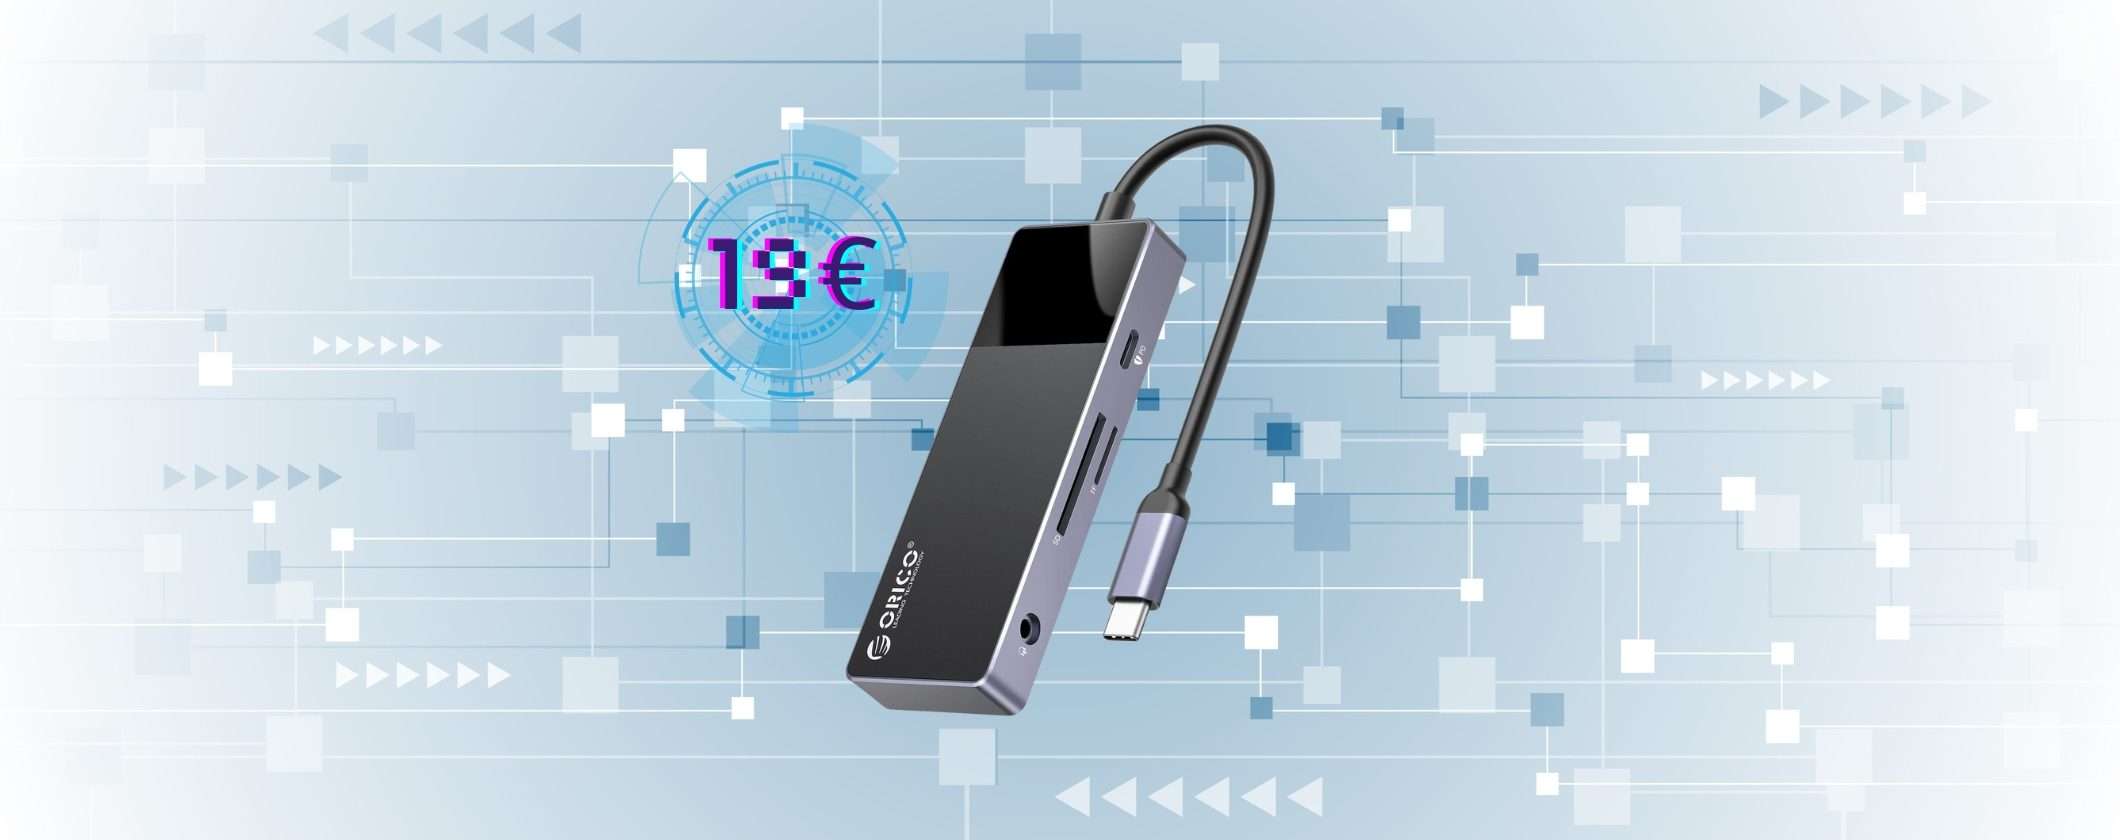 Hub USB-C 8 in 1 a soli 19€: scopri come acquistarlo